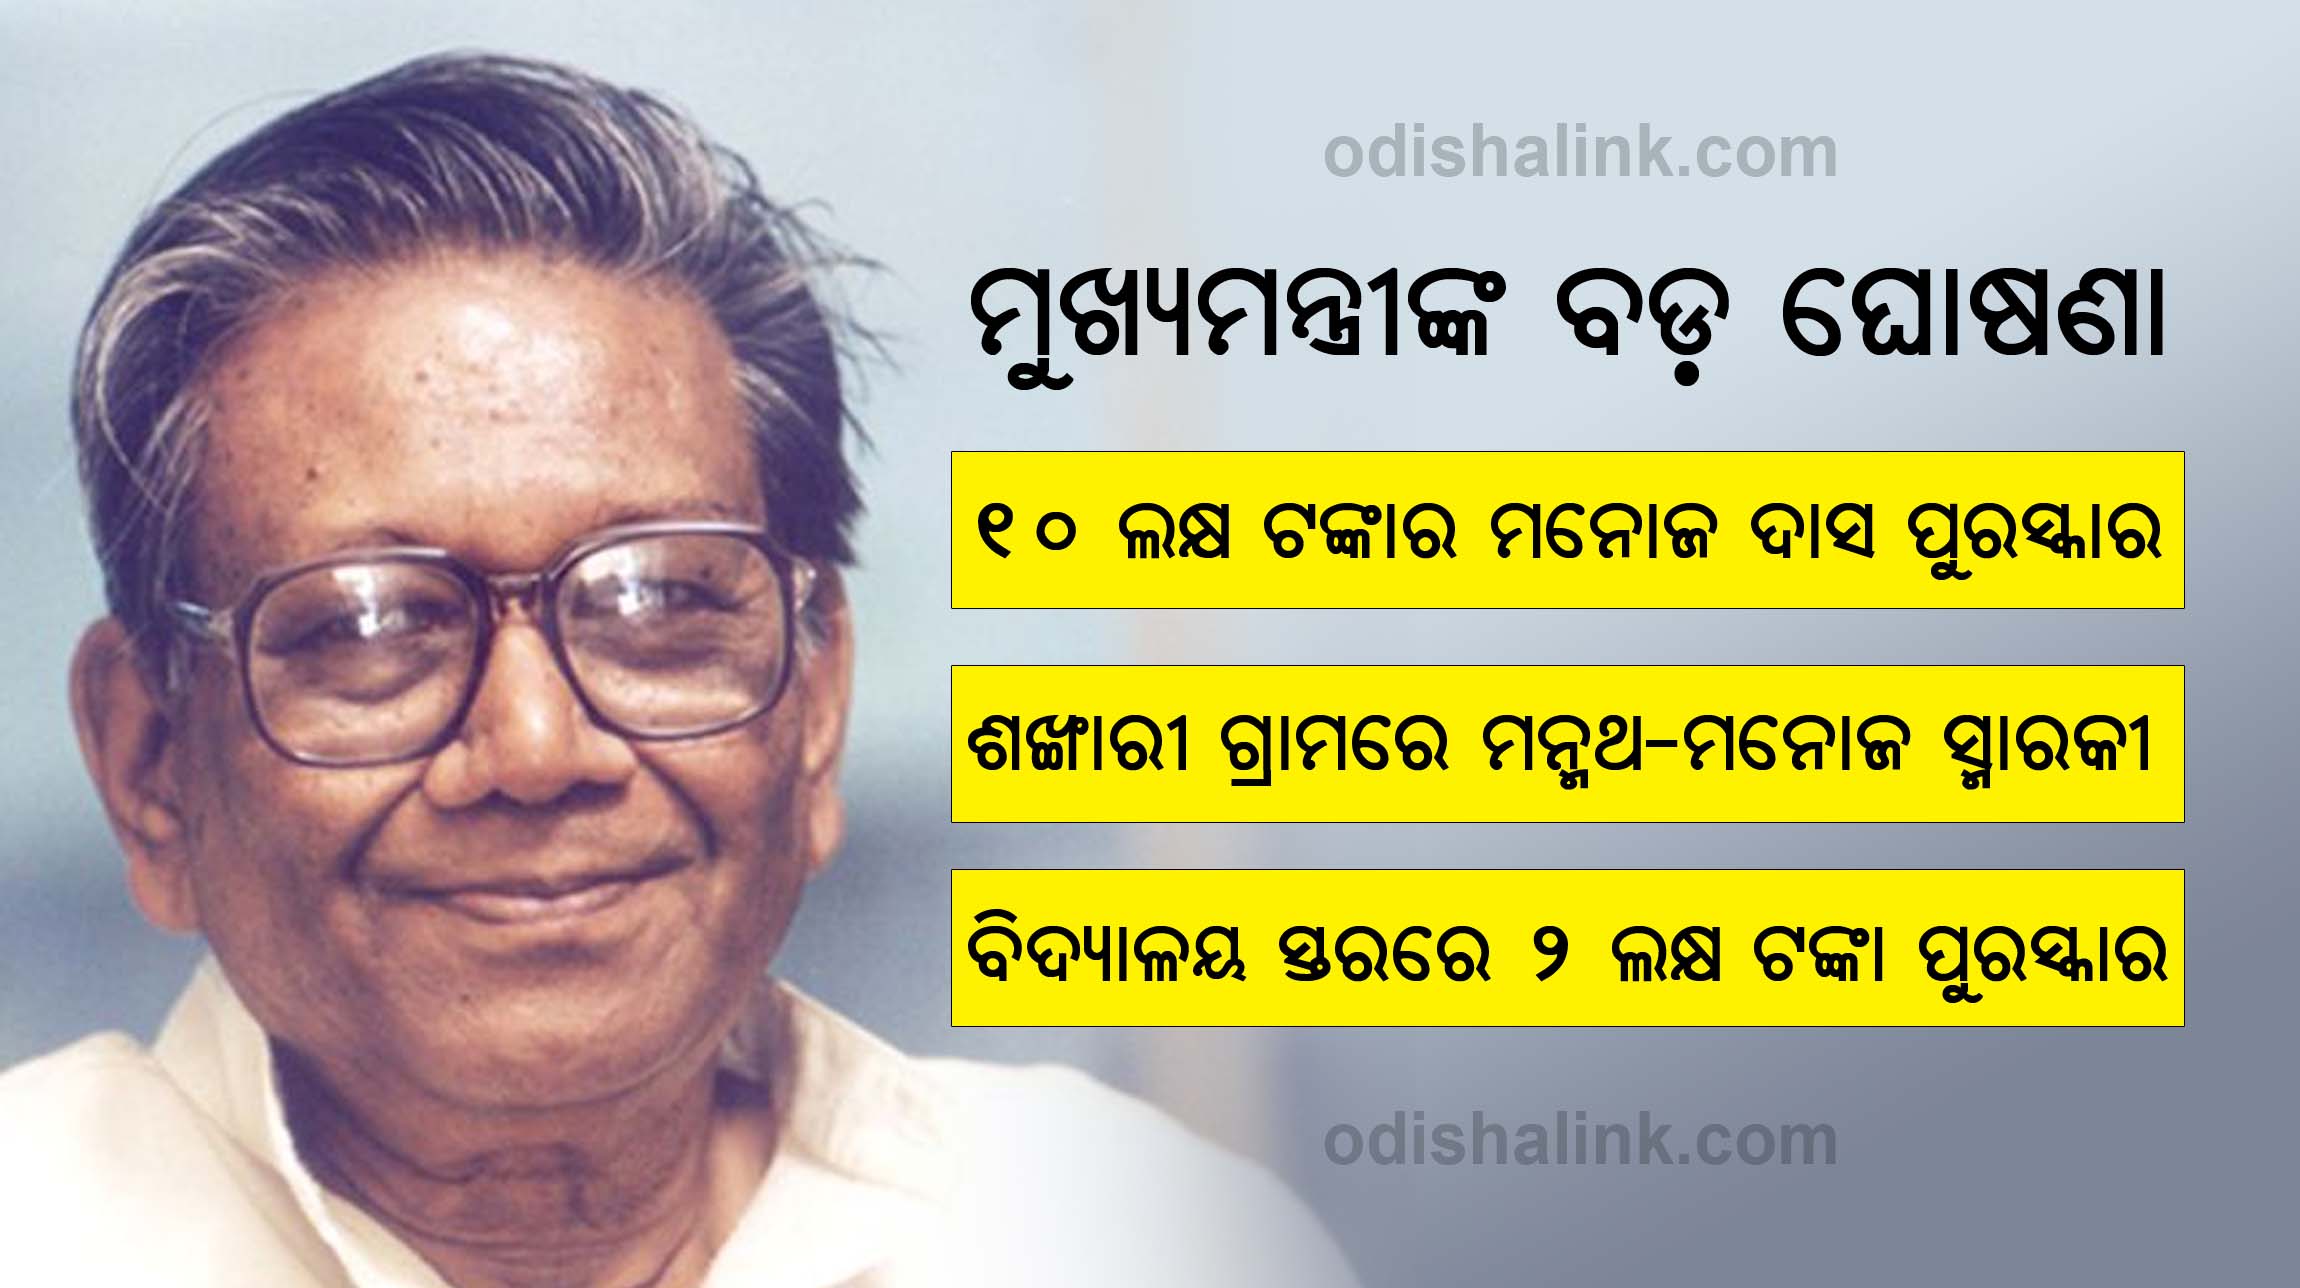 Odisha govt announces special literary schemes on Manoj Das